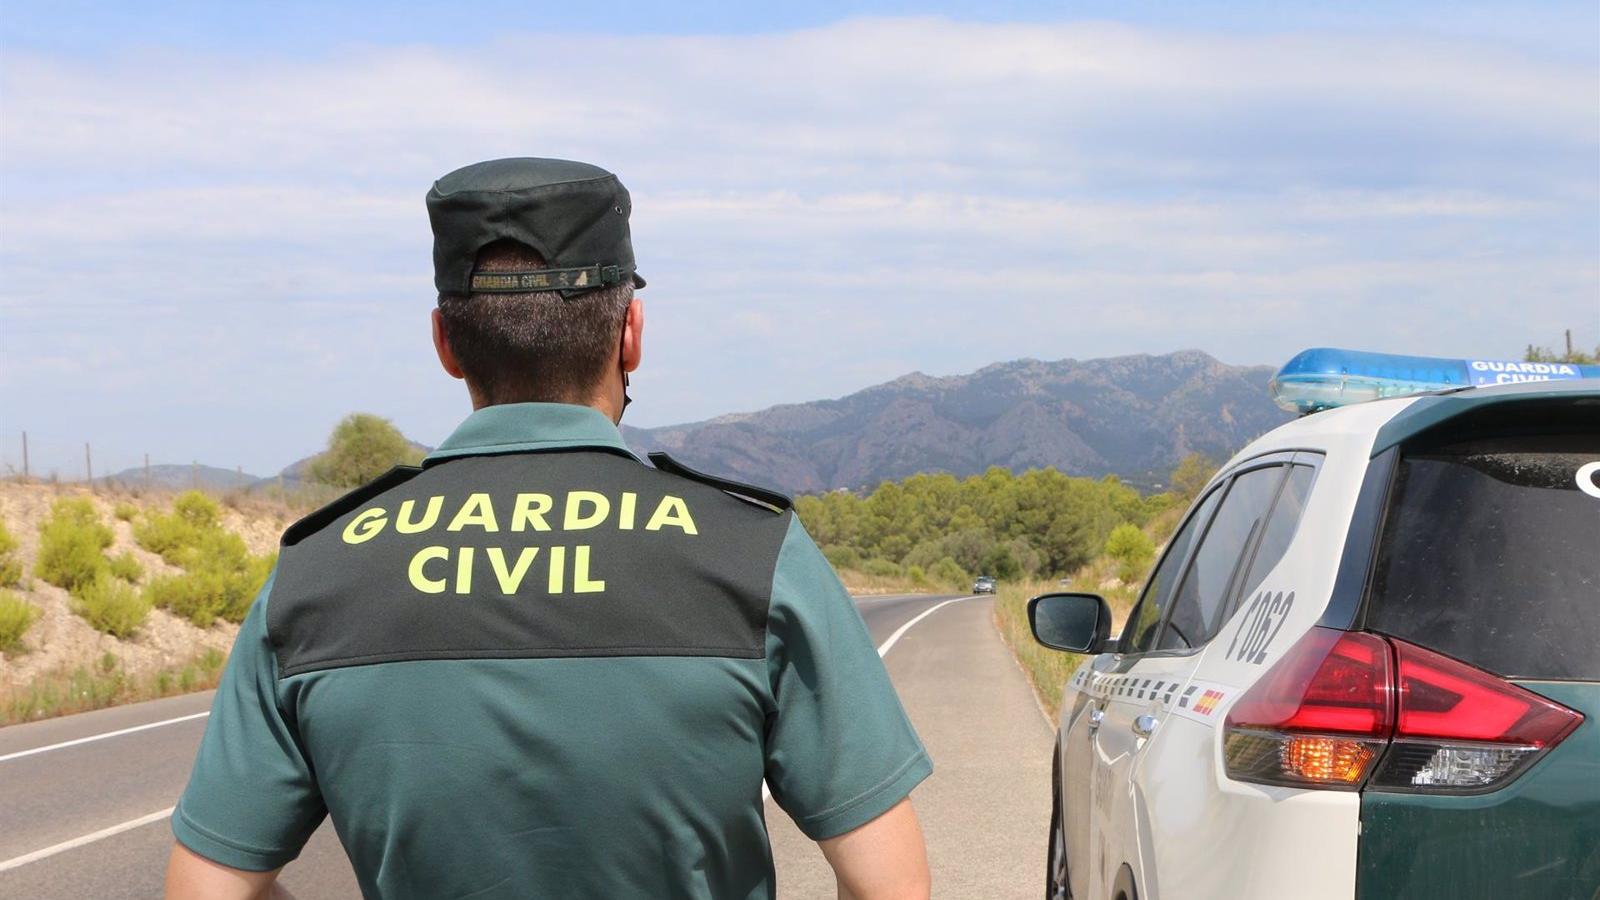 La región alcanza un récord histórico de efectivos con 21.160 agentes de Policía Nacional y Guardia Civil